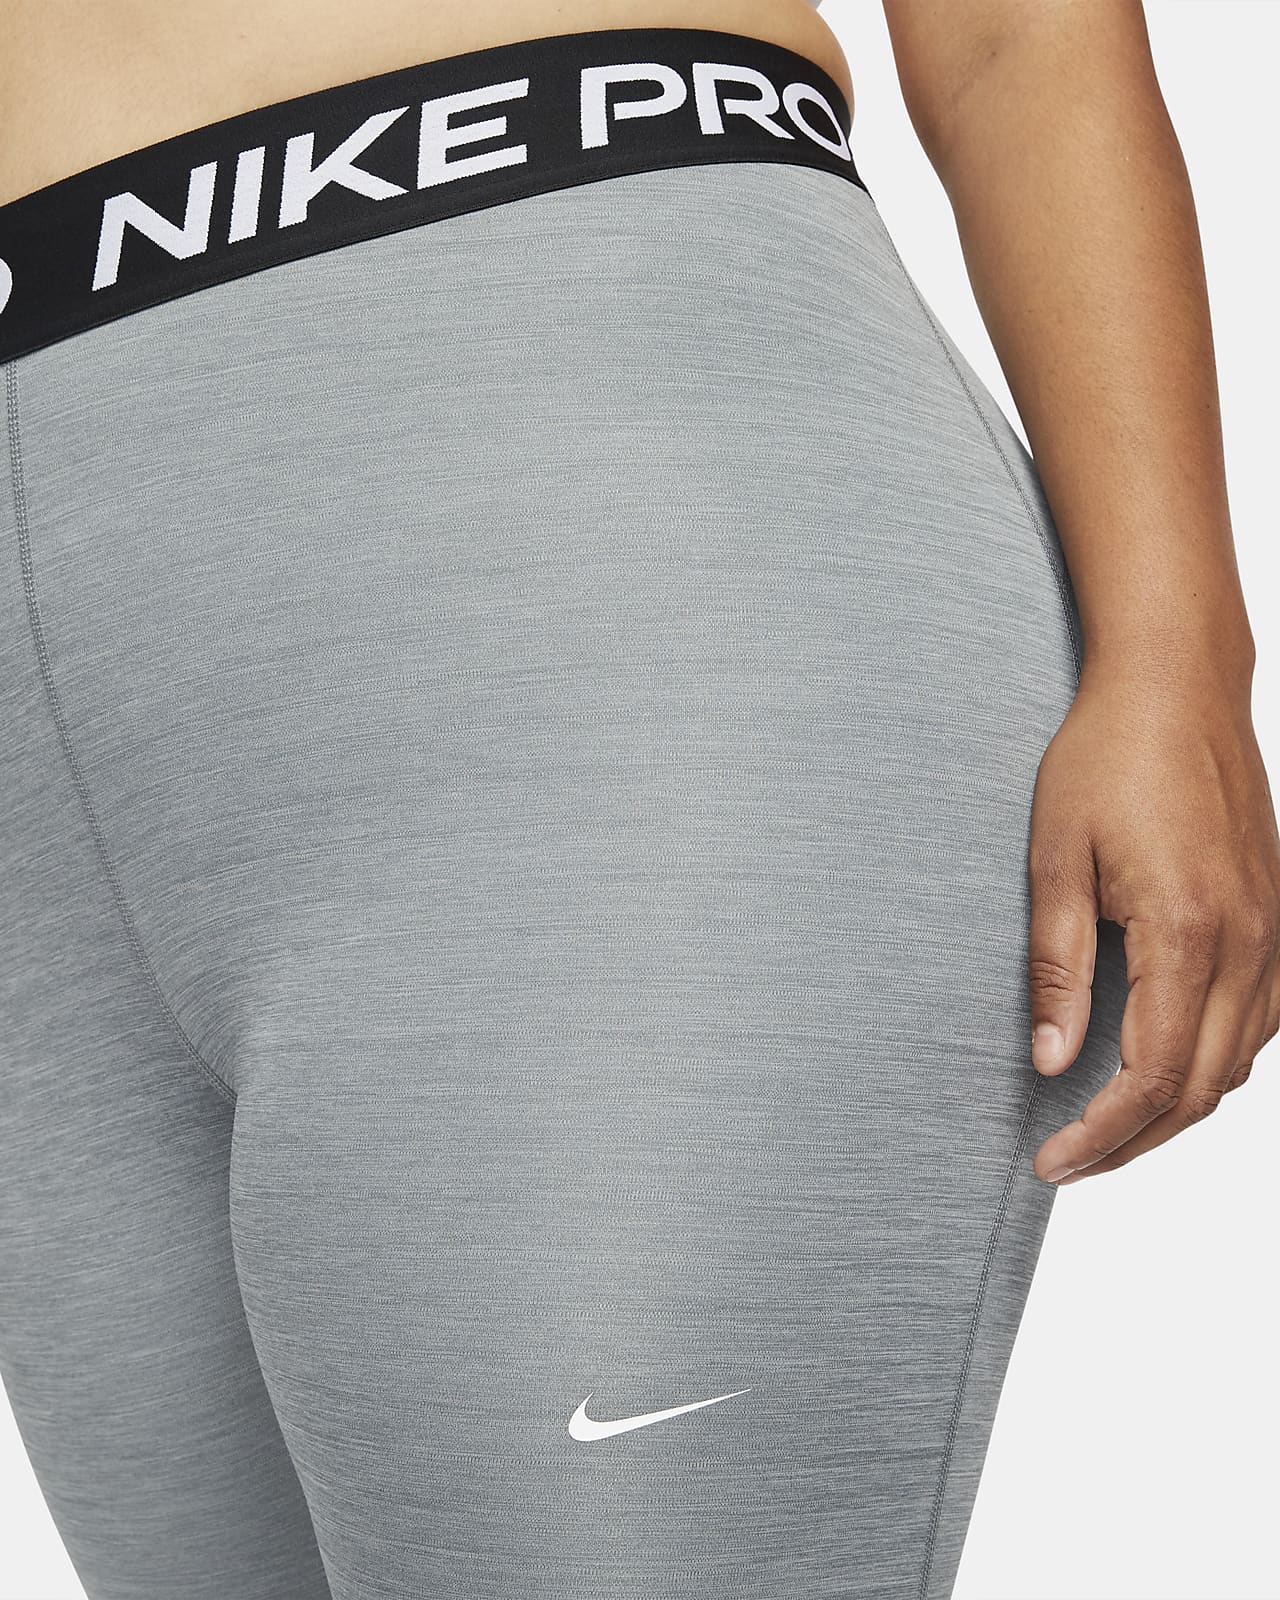 Pro 365 Women's Leggings (Plus Size). Nike.com